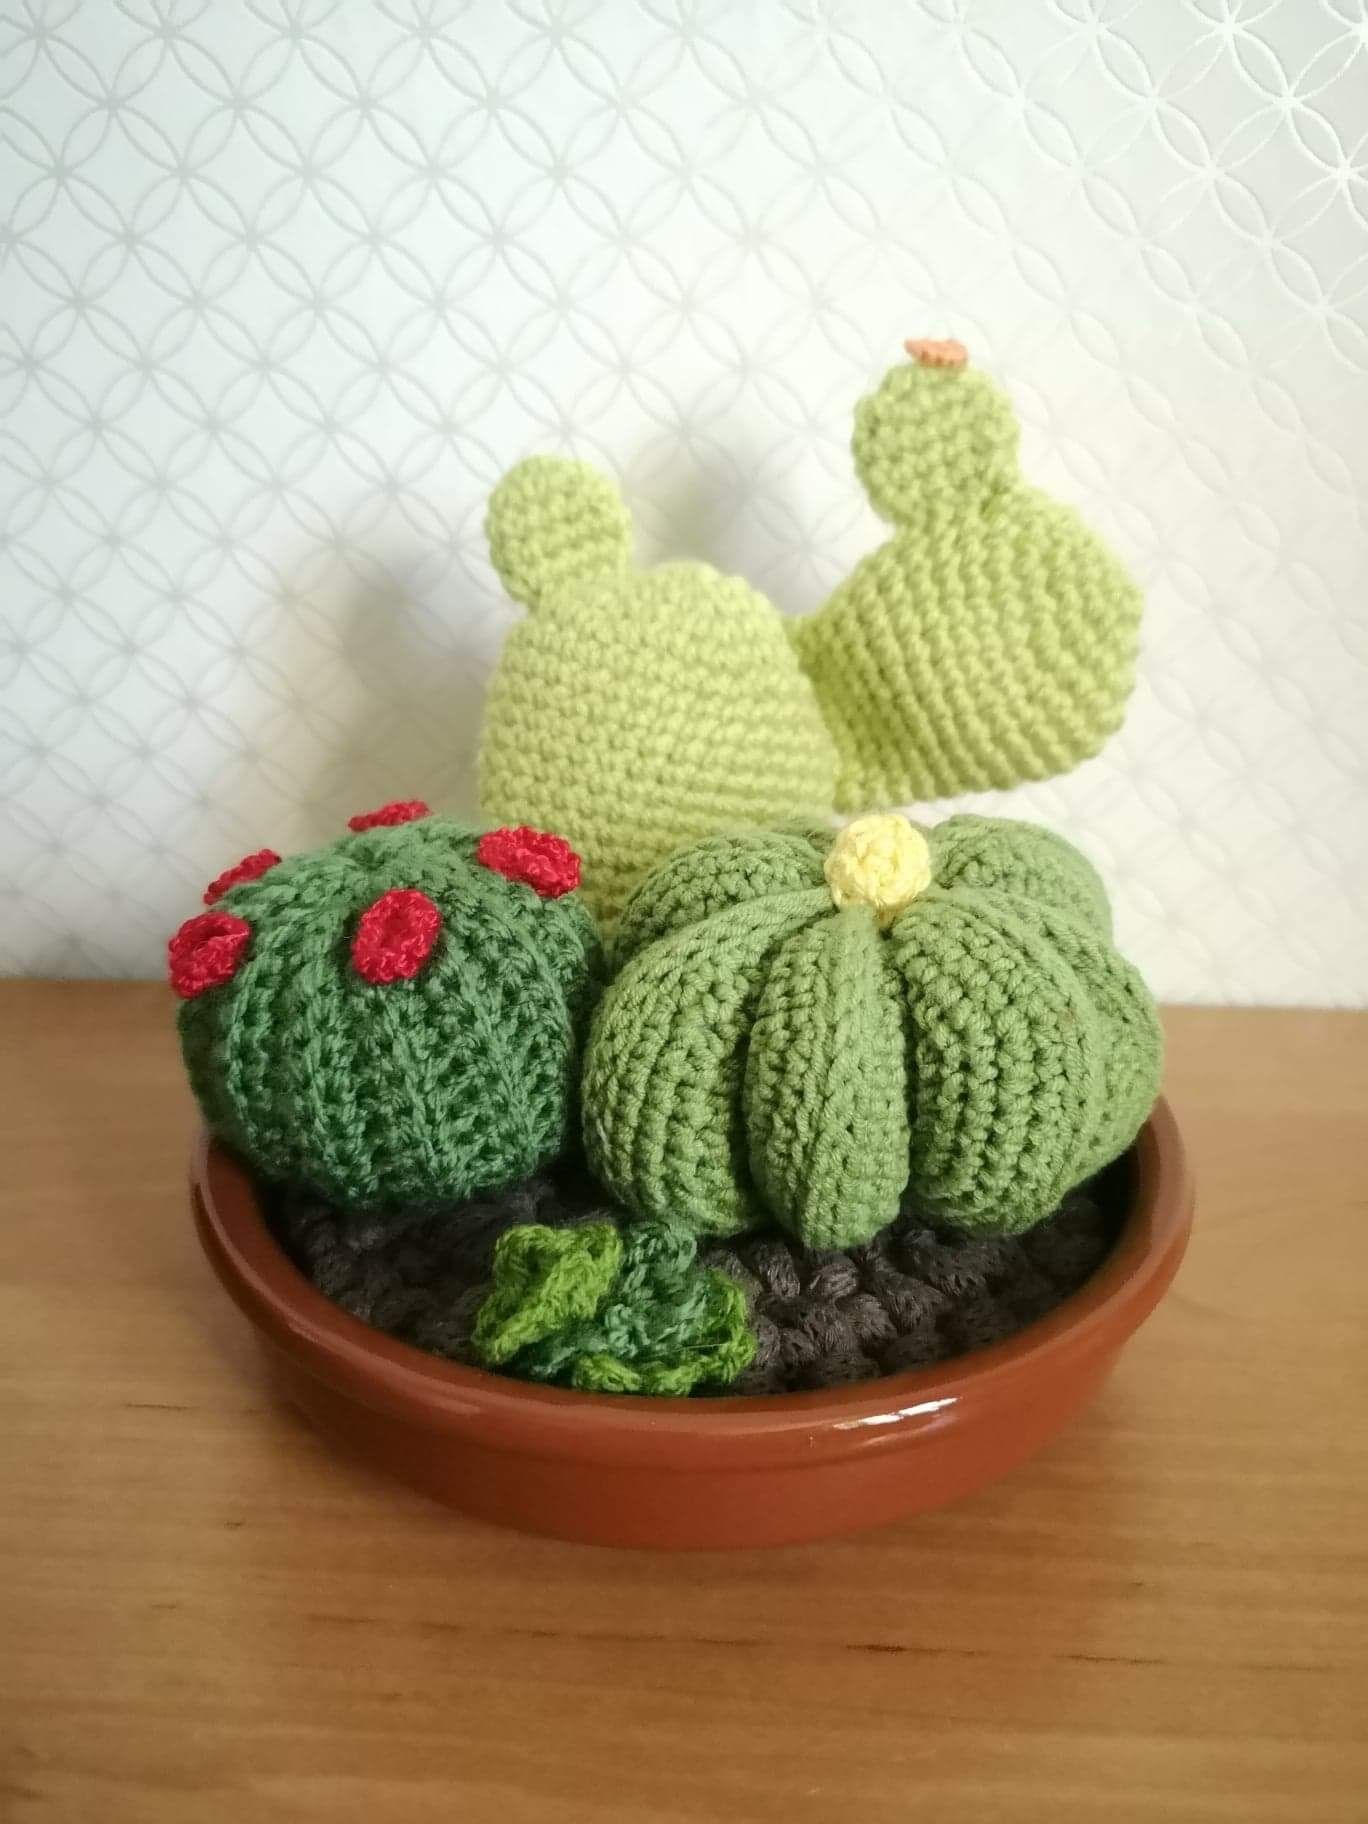 Kompozycja kaktusów zrobionych na szydełku